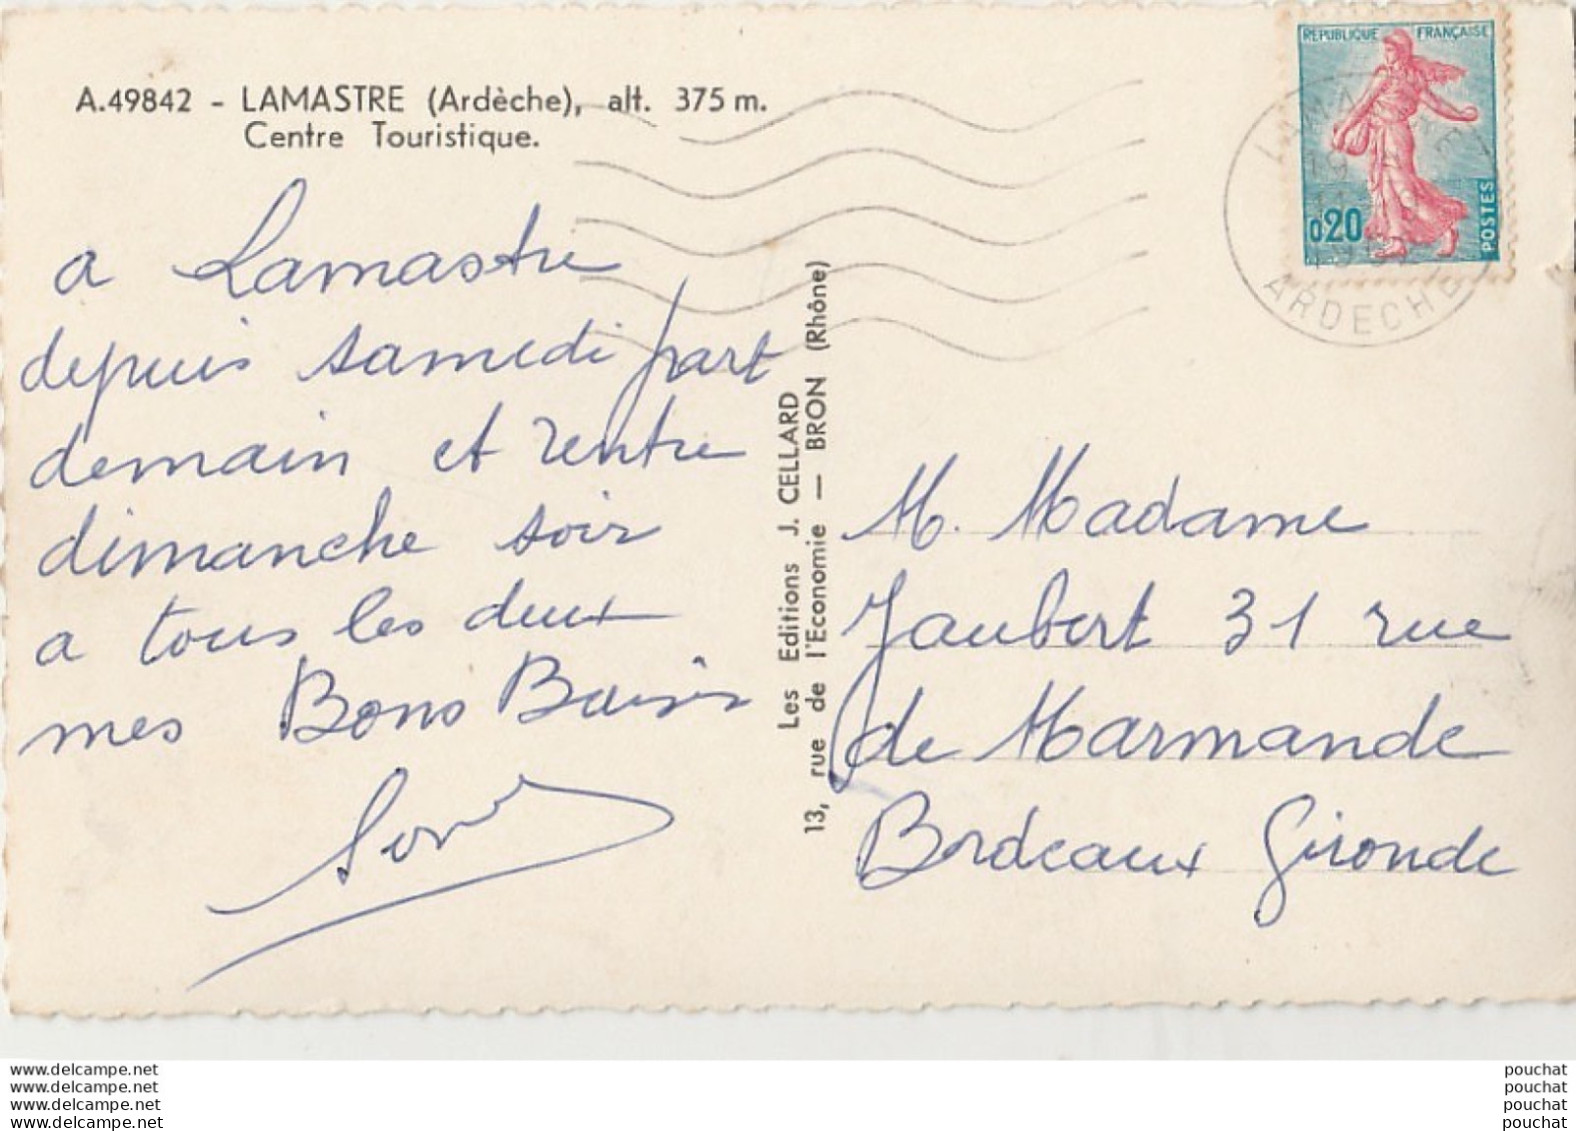 07) LAMASTRE (ARDECHE) CENTRE TOURISTIQUE - RETOURTOUR - PARC ET PLACE SEIGNOBOS - LA PLAGE - ( 1962 - 2 SCANS ) - Lamastre